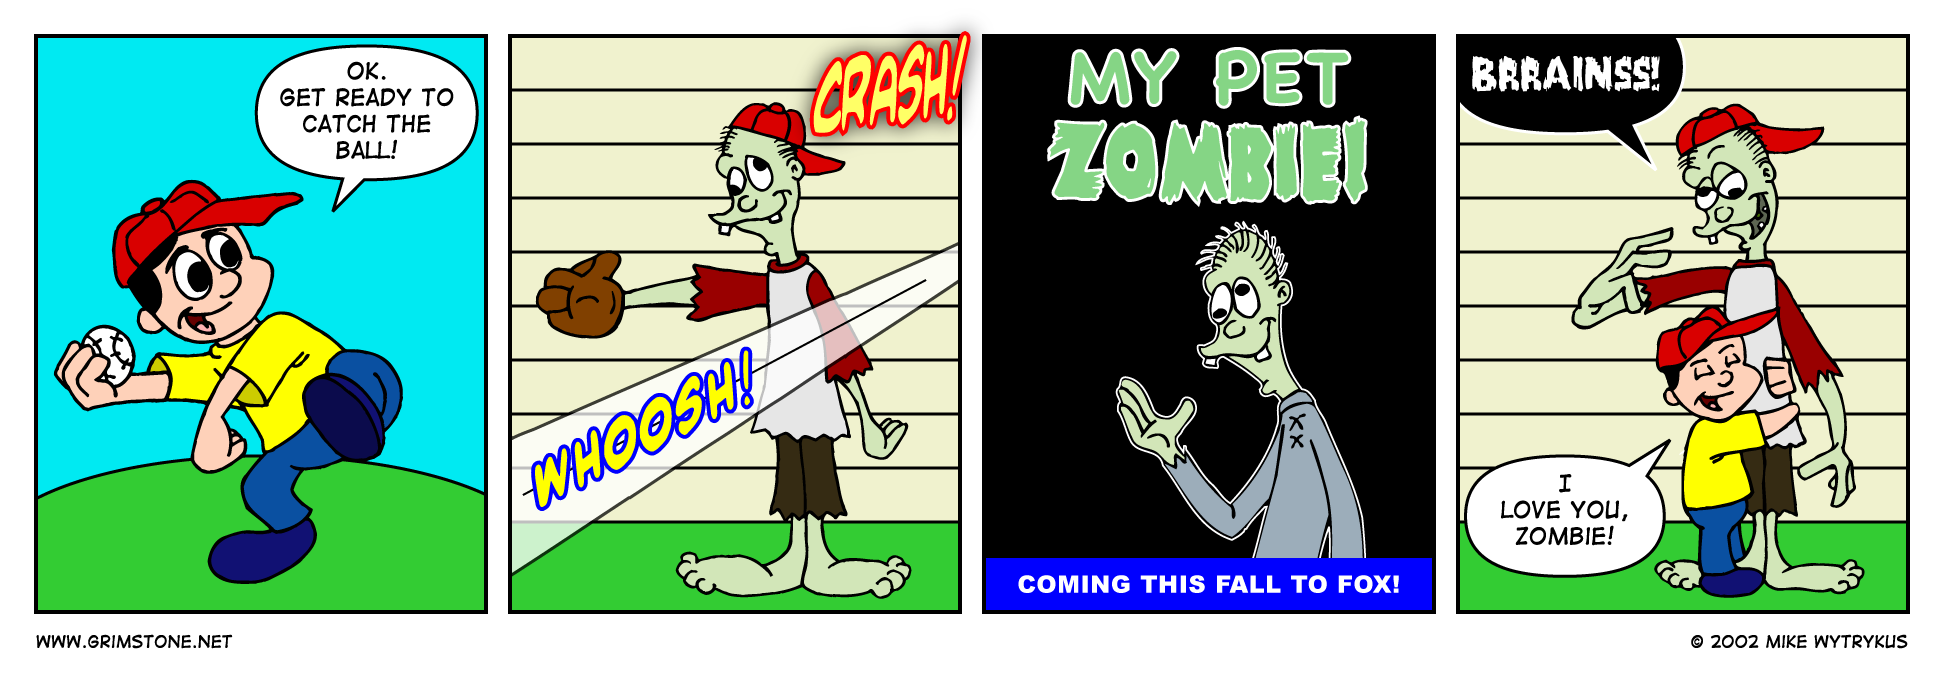 My Pet Zombie